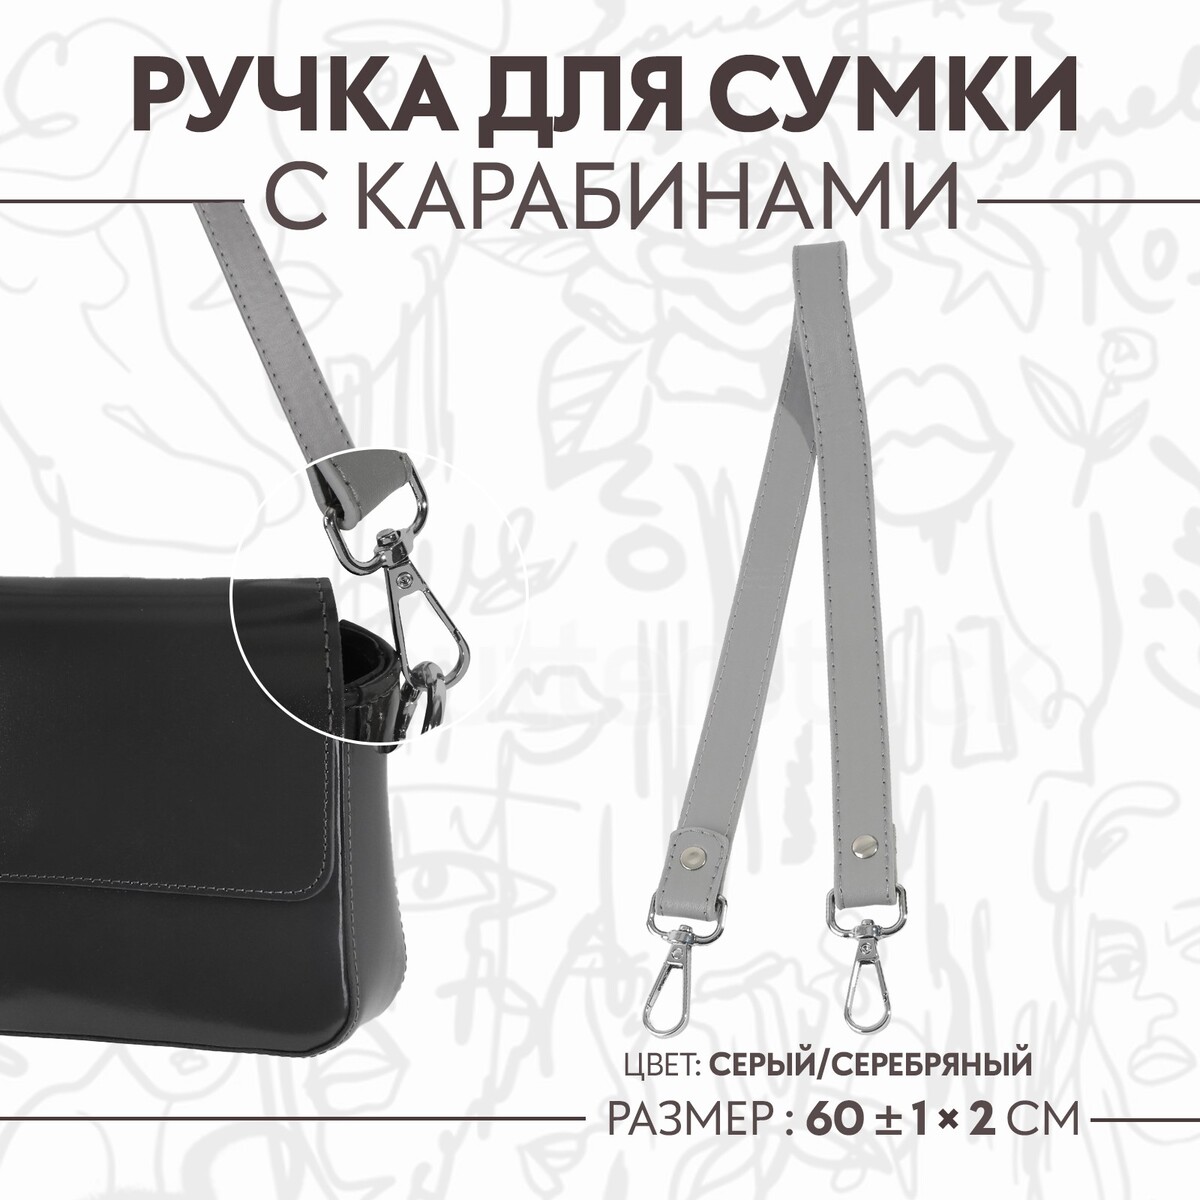 Ручка для сумки, с карабинами, 60 ± 1 см × 2 см, цвет серый ручка для сумки 34 × 1 5 см серый